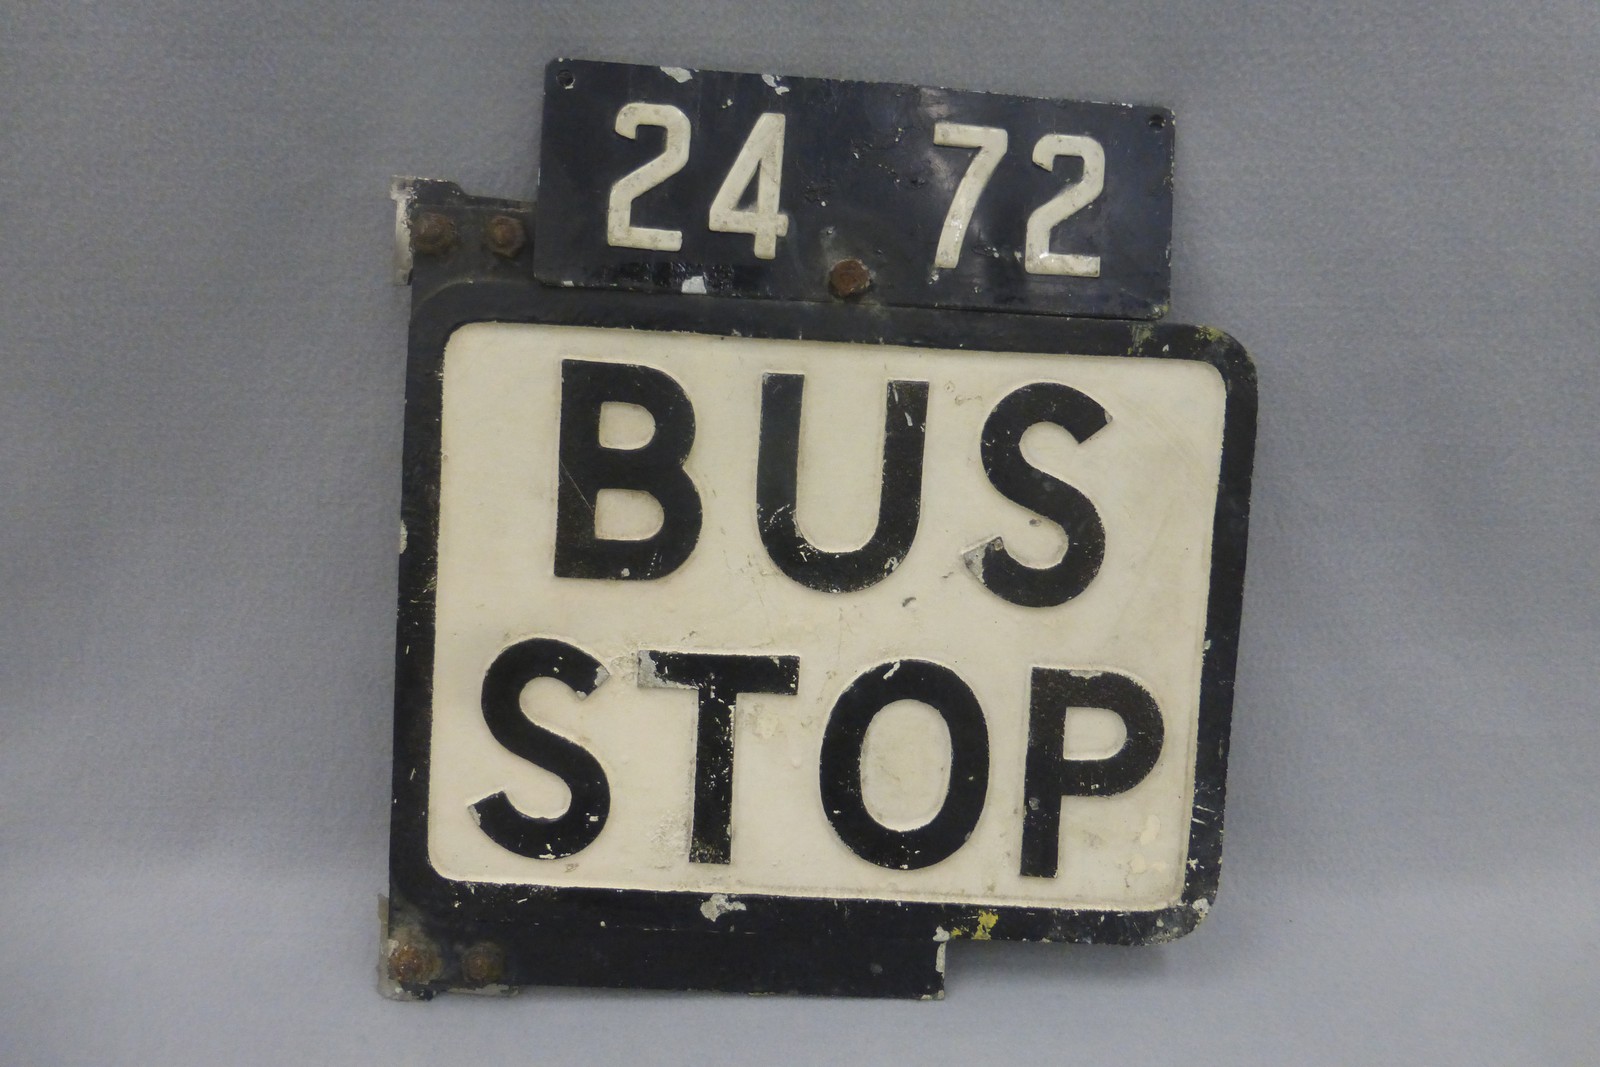 A Bus Stop cast aluminium sign, 12 x 13".